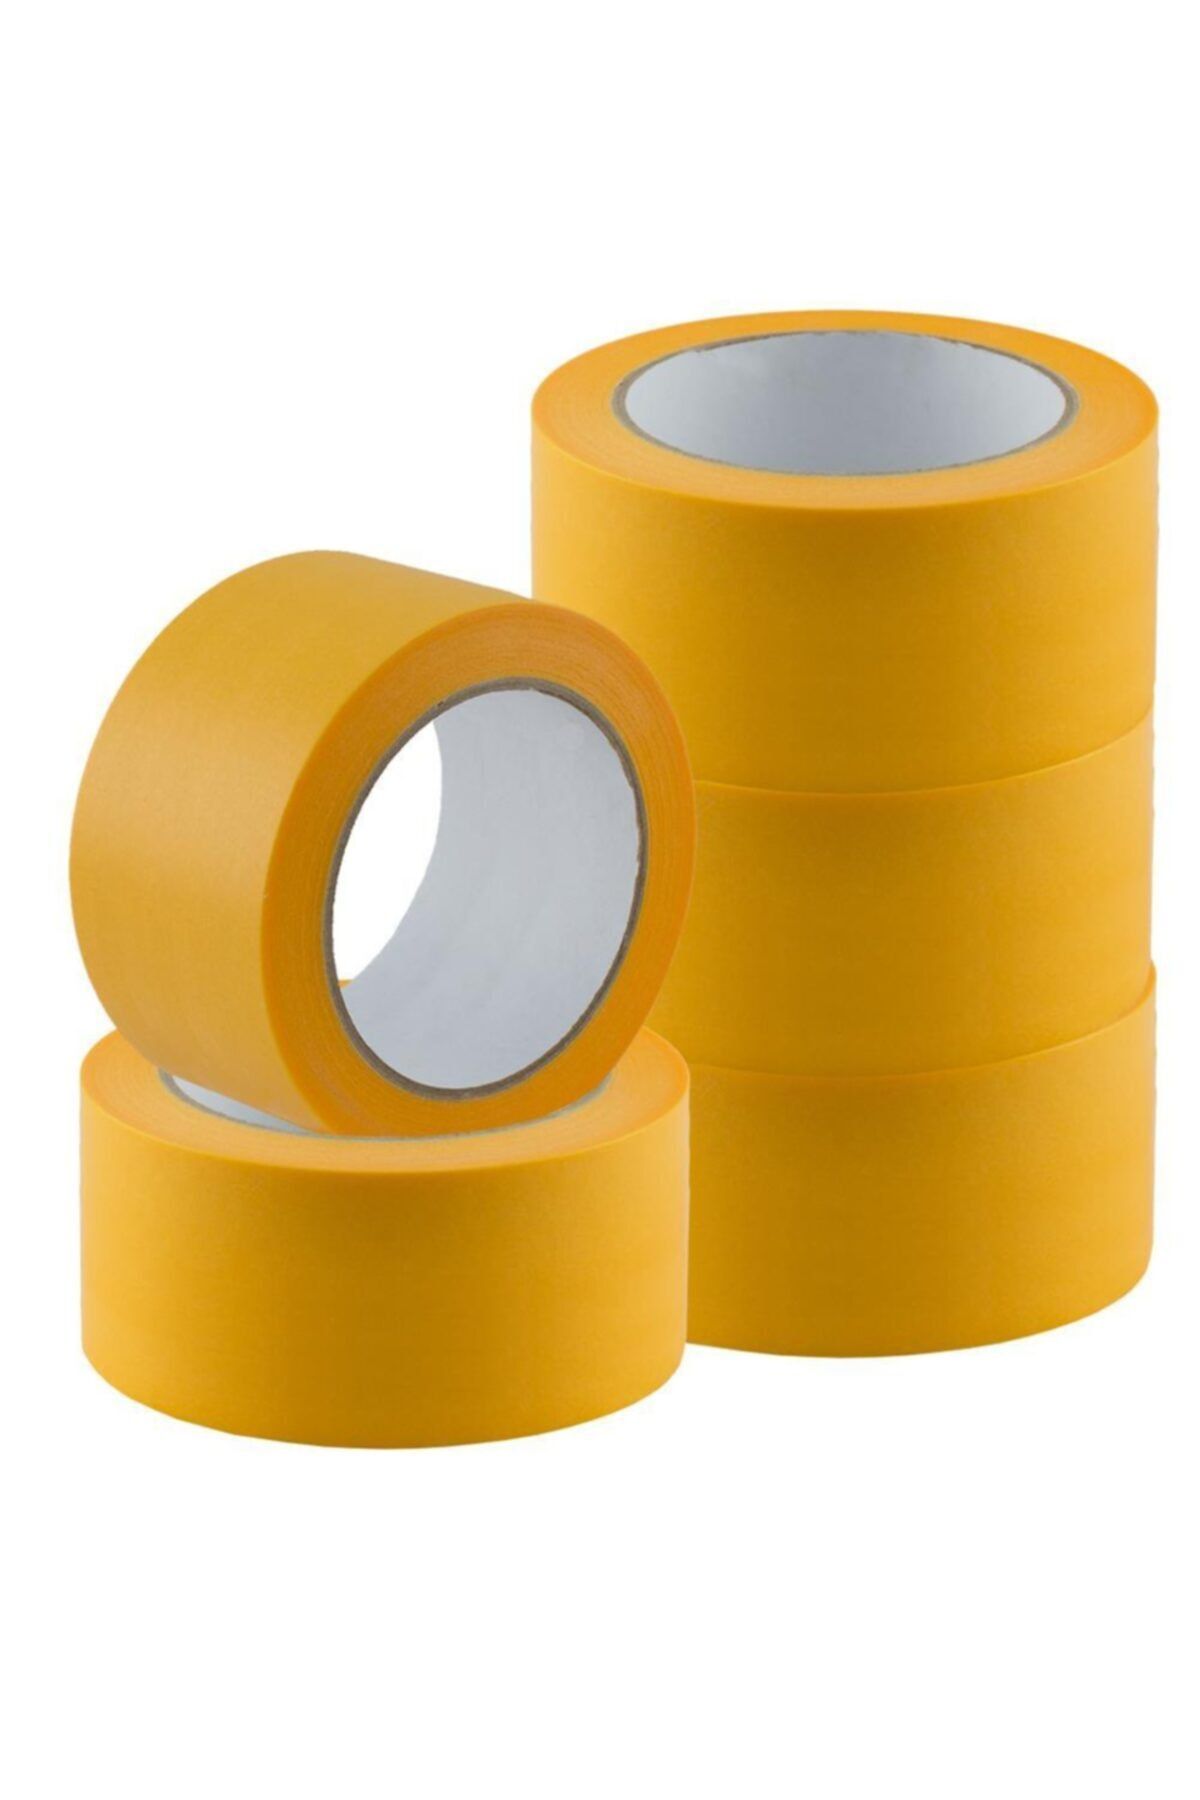 NewVario Washı Tape Gold Maskeleme Bandı 50 mm X 50 Metre 3 Adet